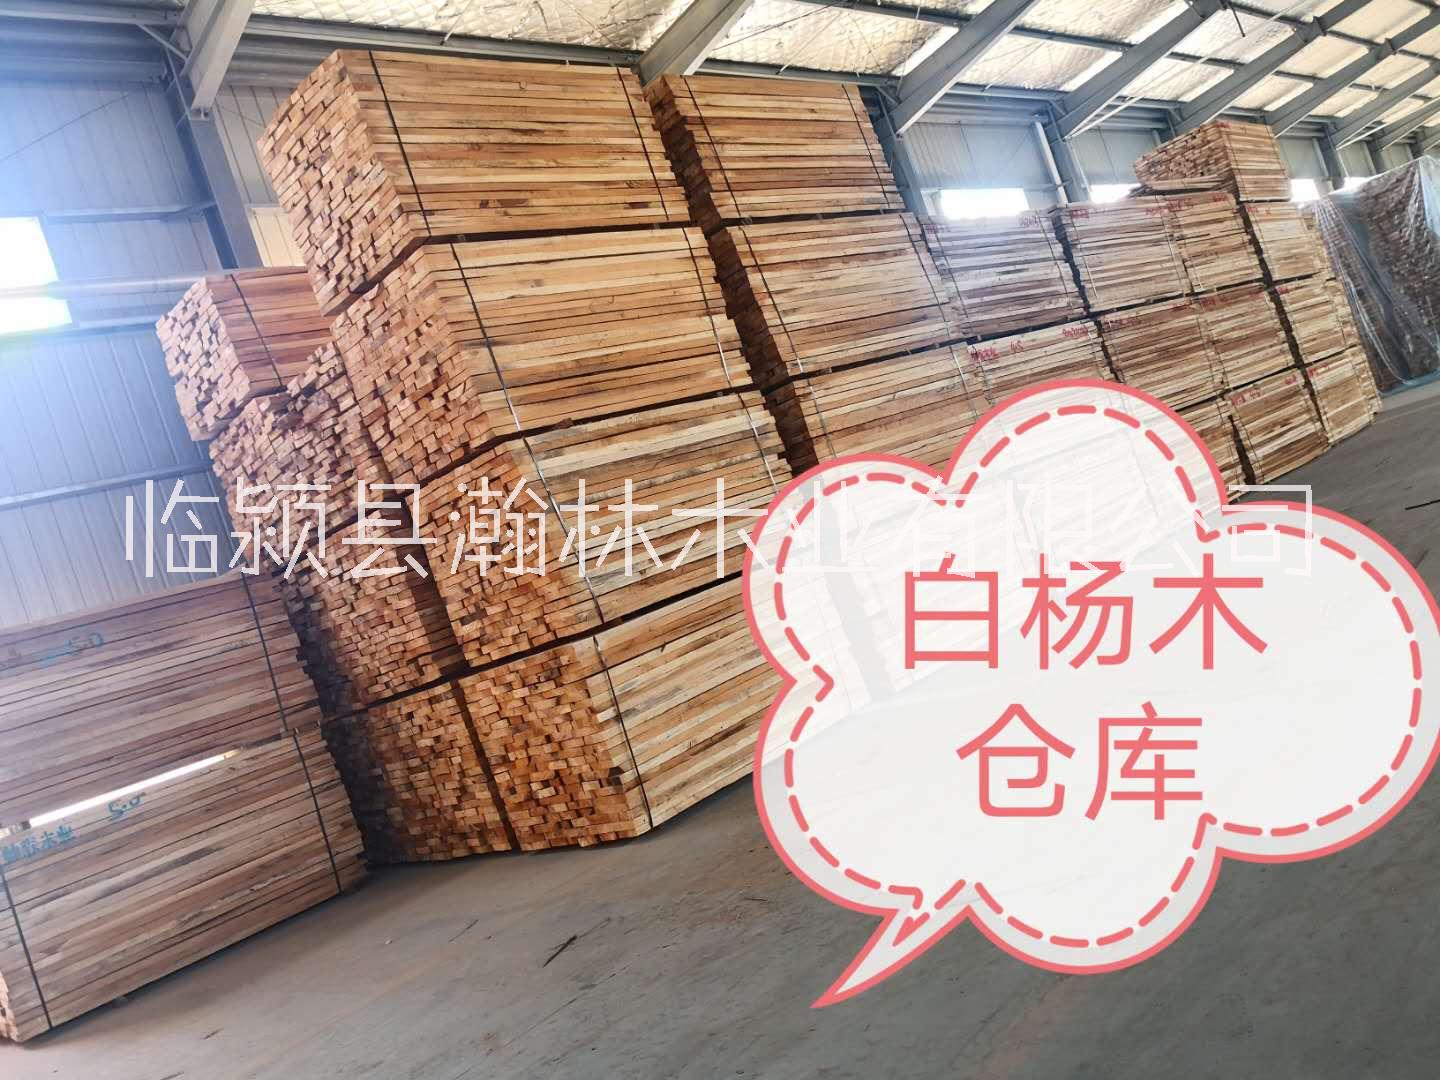 白杨木厂家蒸汽烘干批量销售白杨木烘干板材家具规格